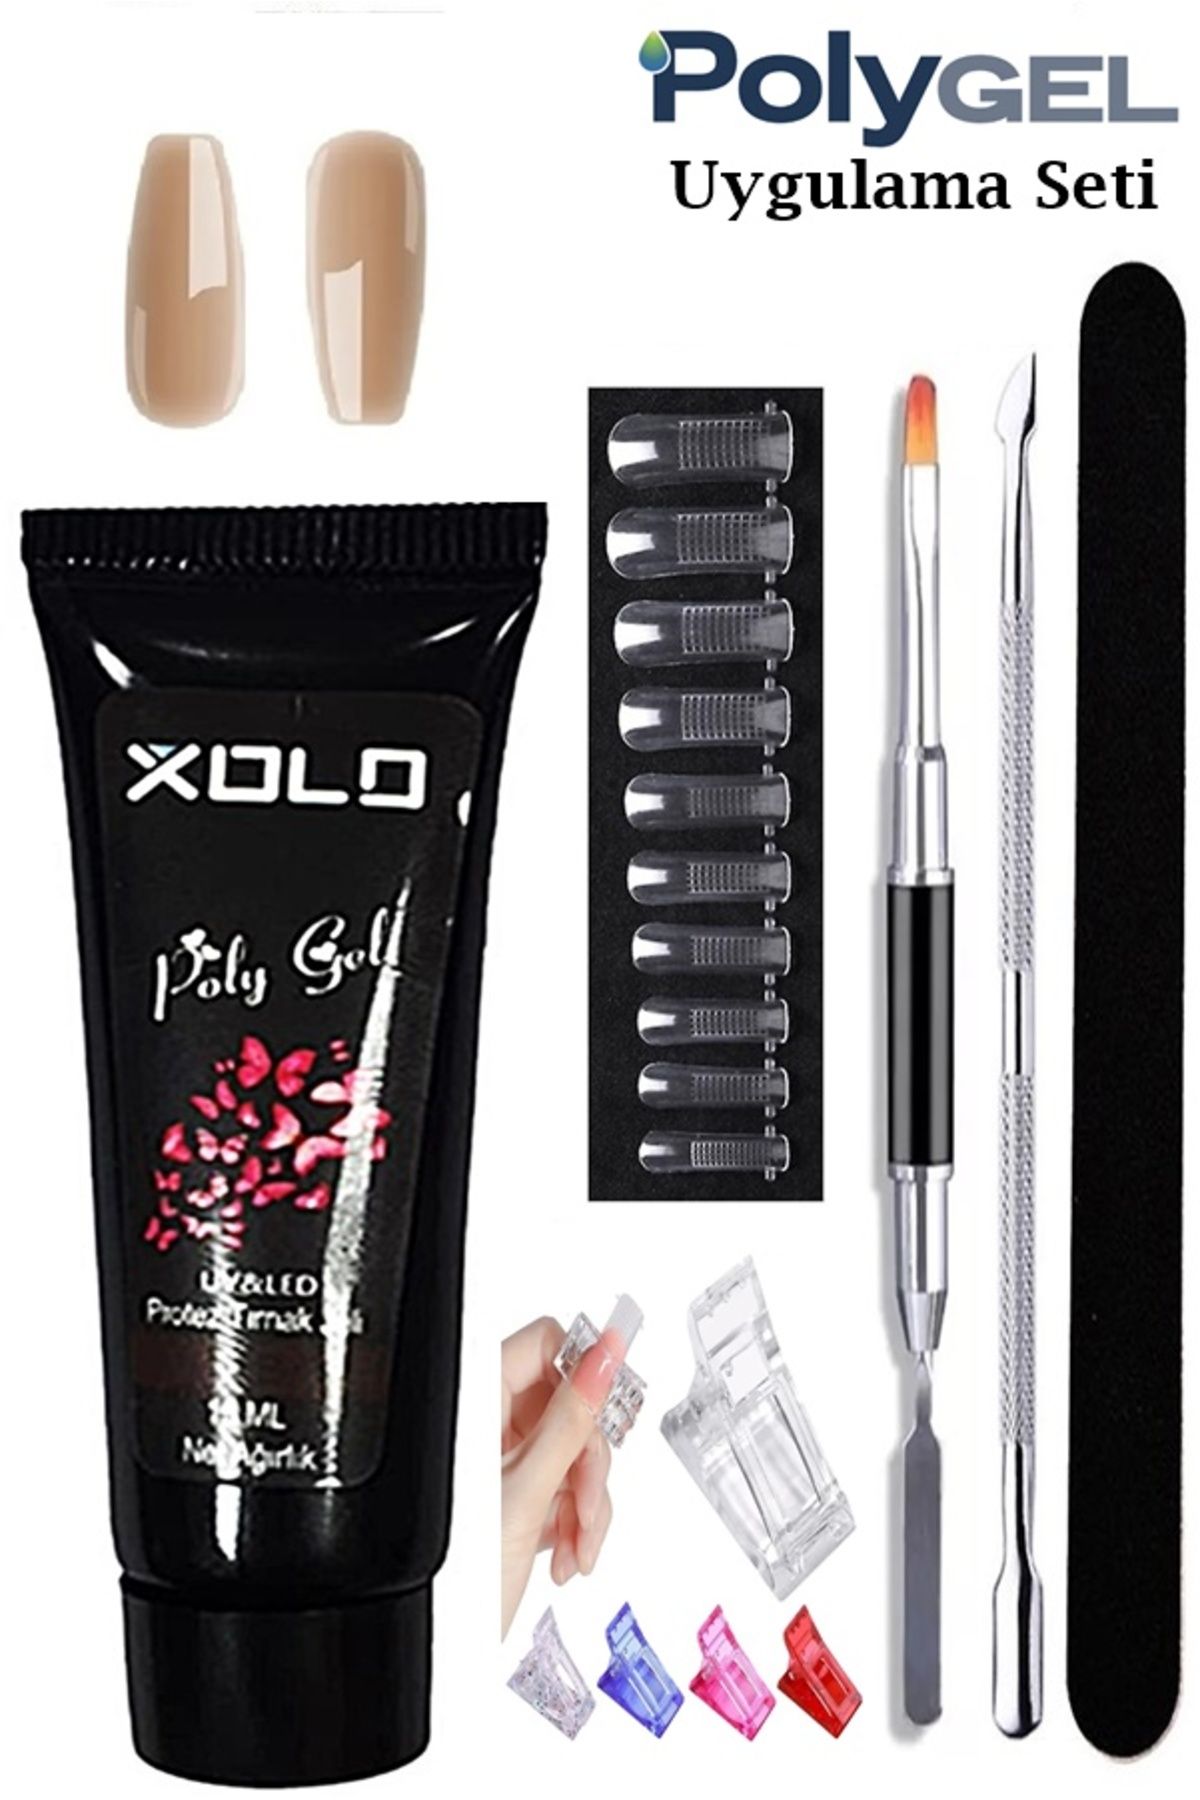 Xolo Poligel Kalıcı Oje Uygulama Seti 7 Parça Trend Renkler Oje Polijel Akrilik Protez Tırnak Seti